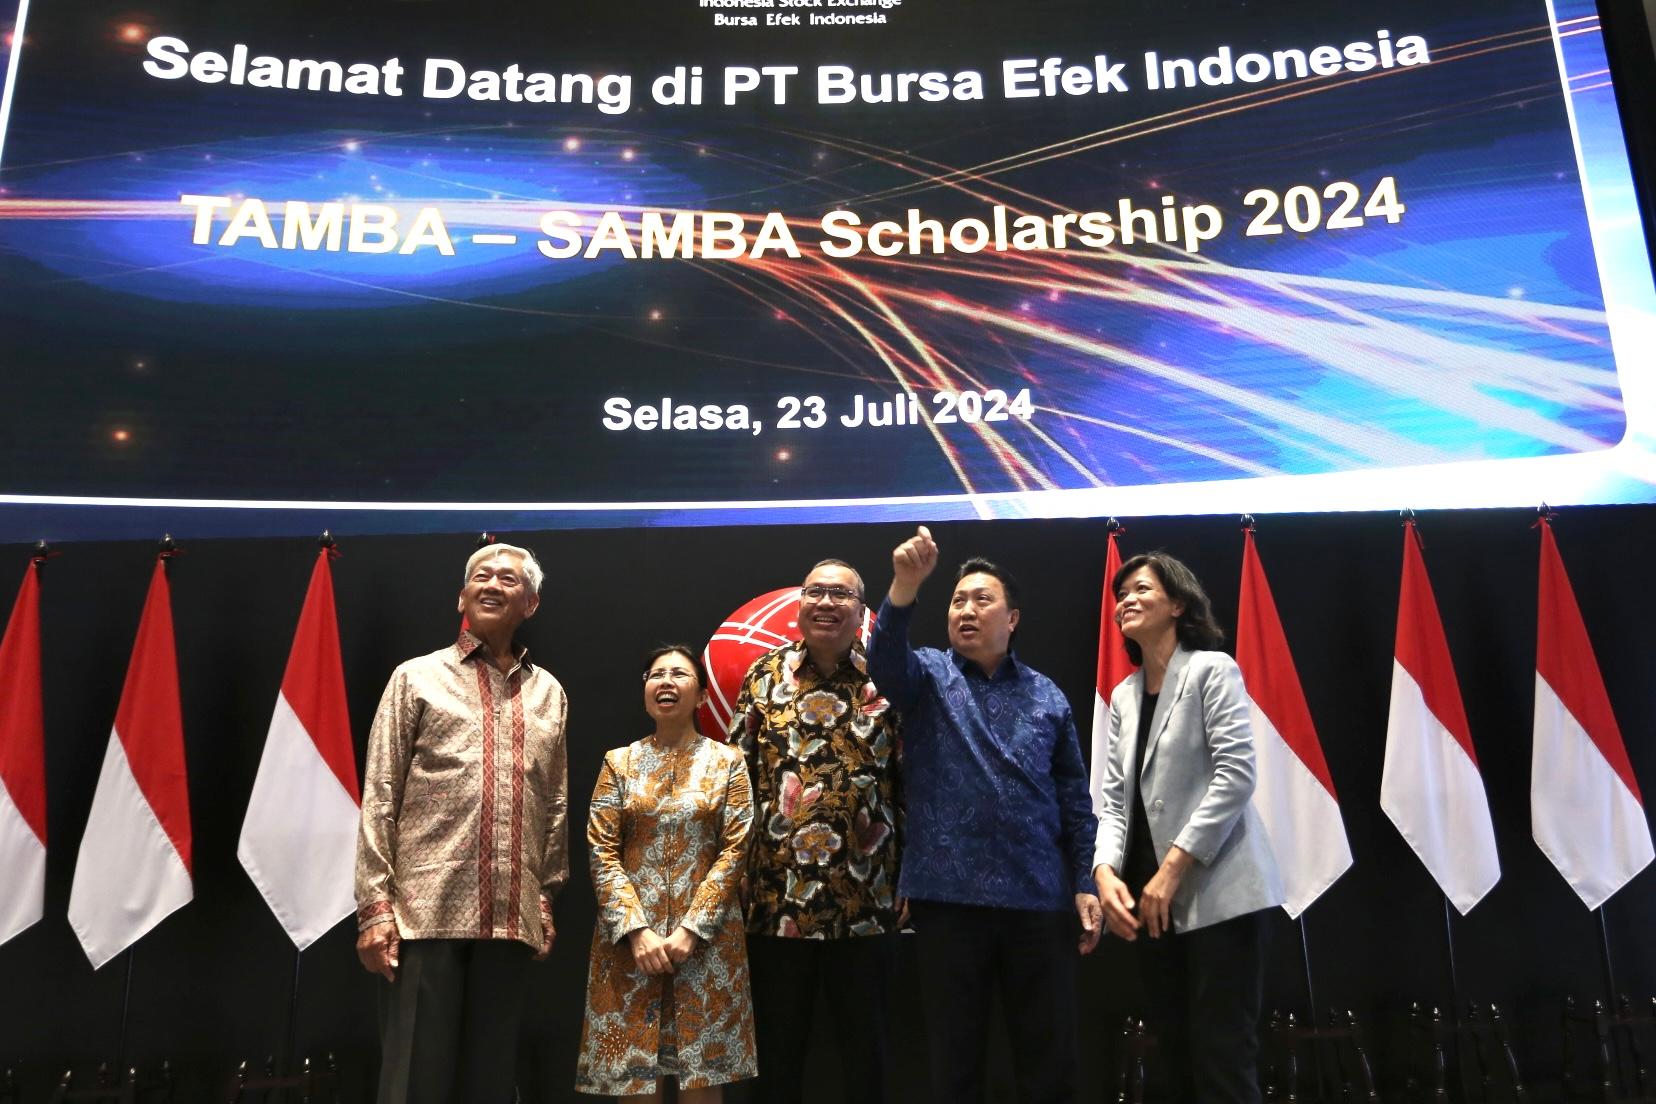 TAMBA-SAMBA Tawarkan Beasiswa Hampir Rp 7 Miliar, Penerima: Bisa Kirim Uang ke Indonesia 